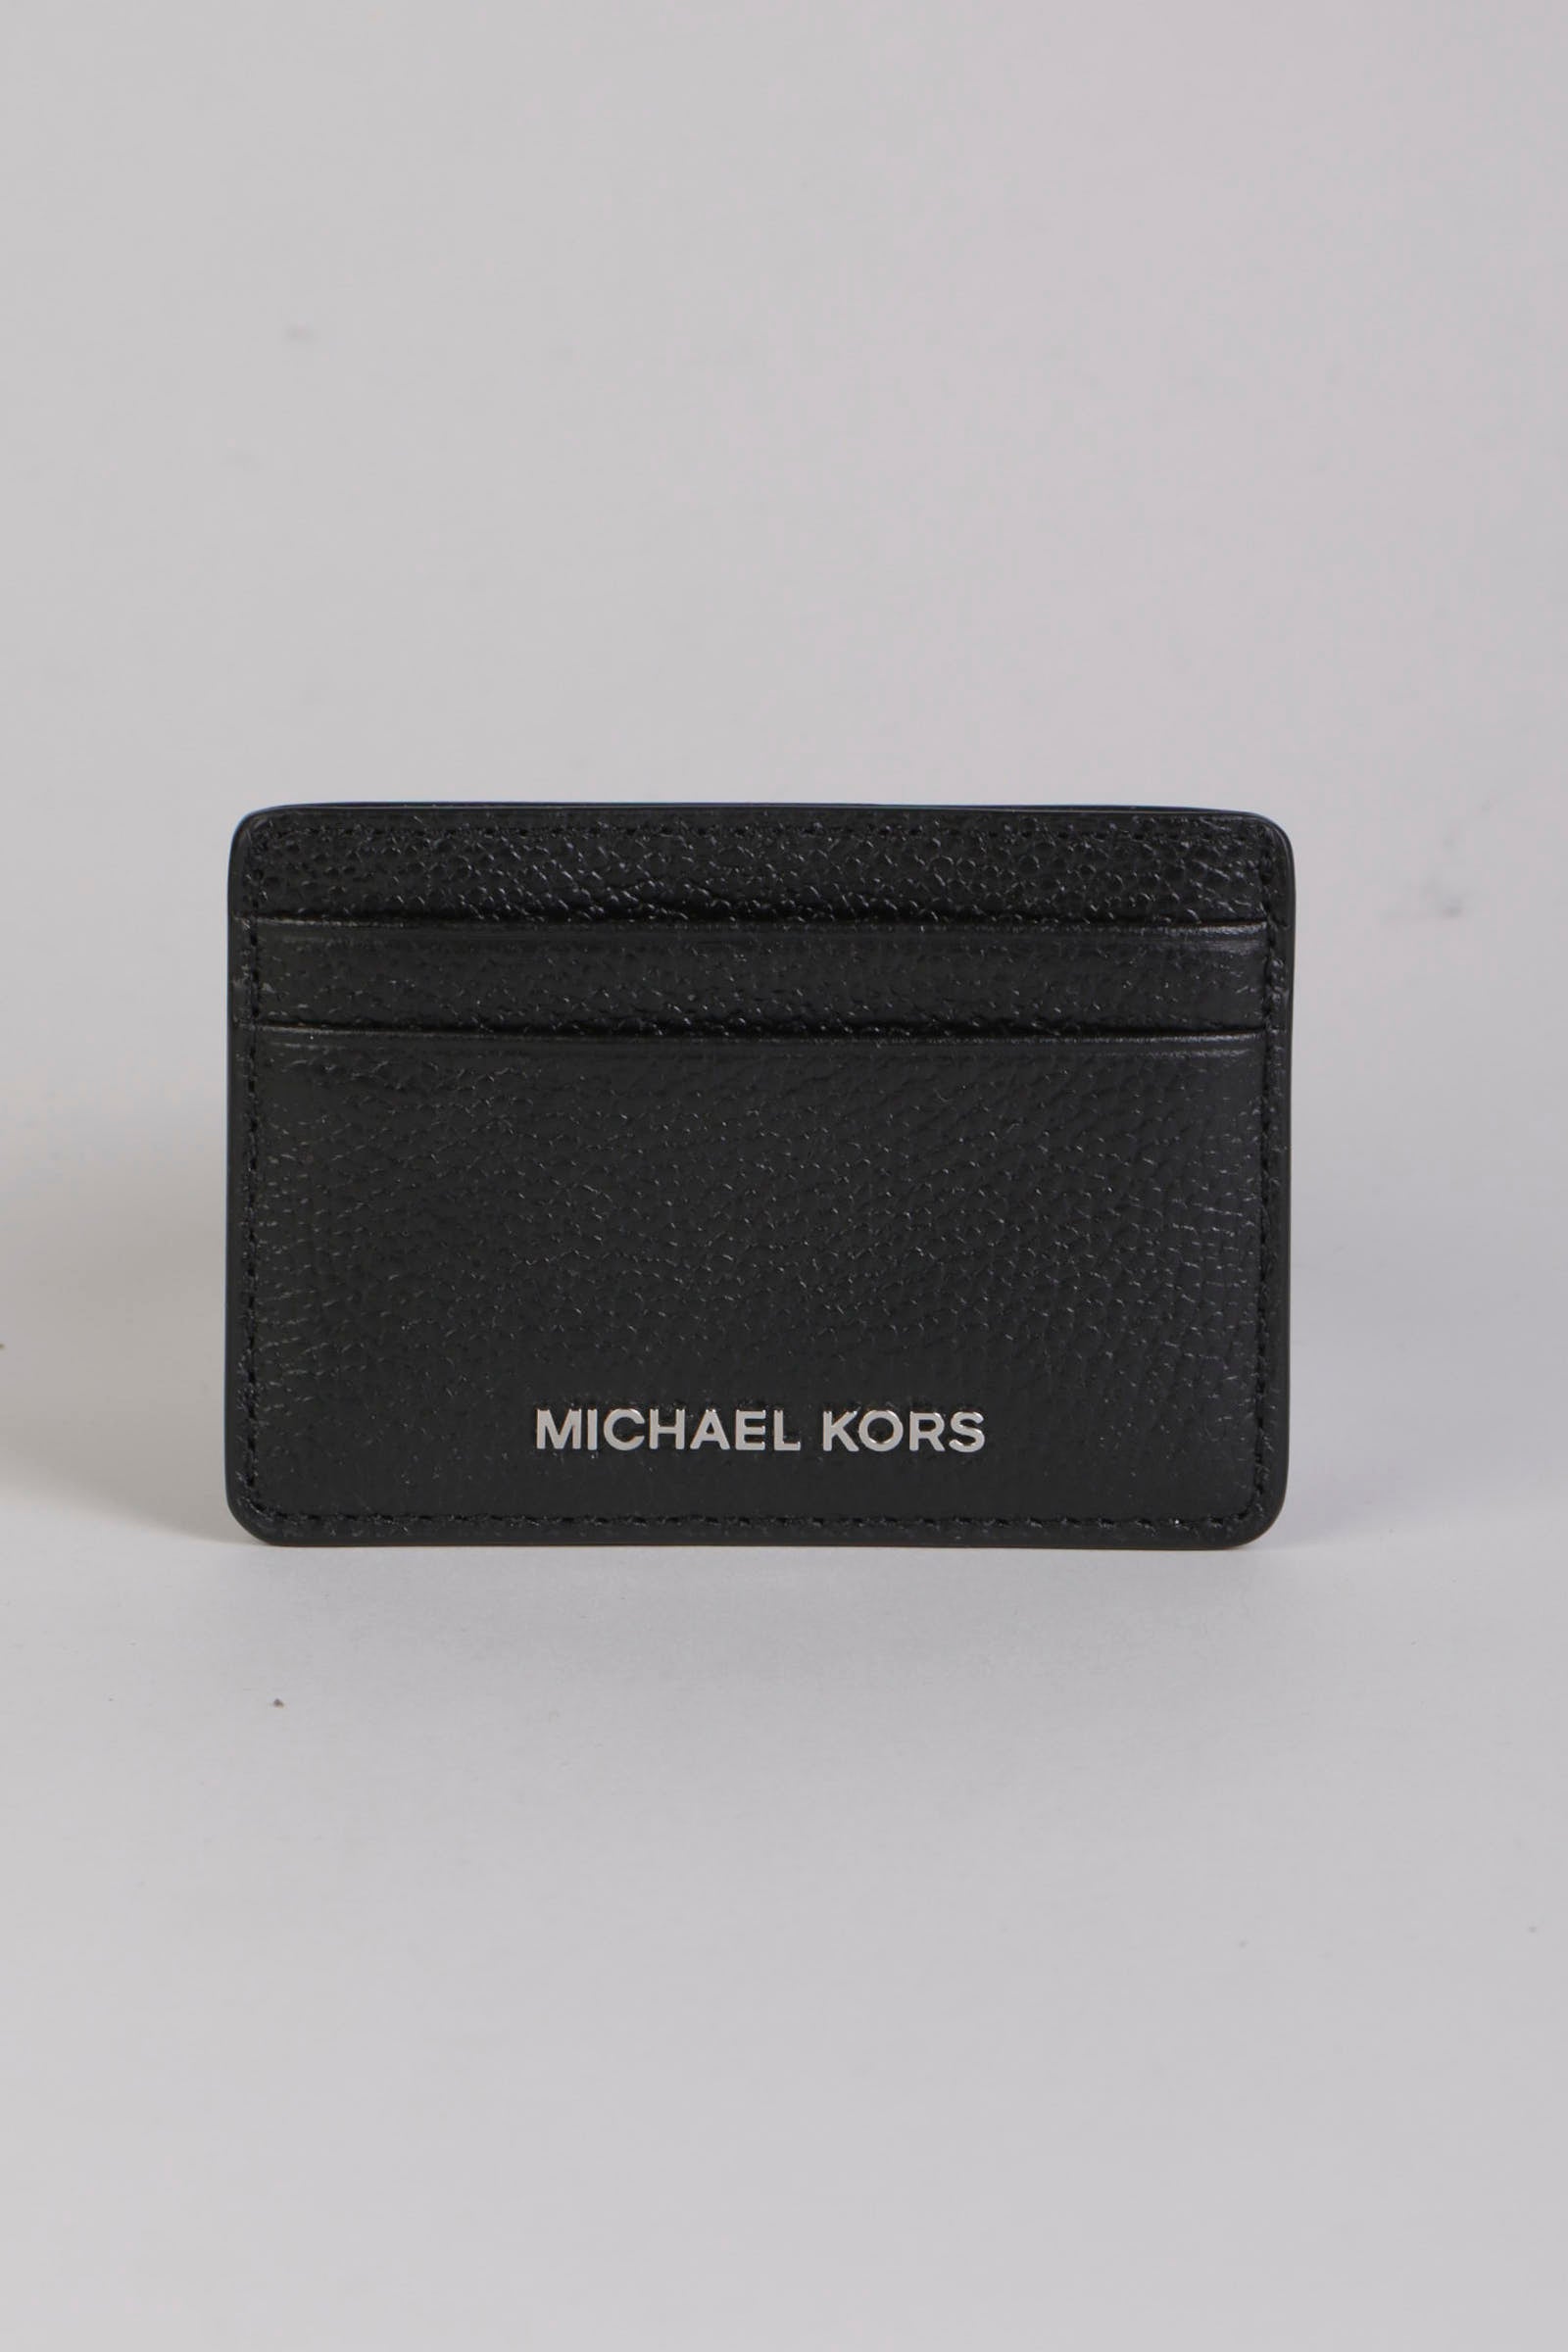 MICHAEL KORS Portacarte di credito nero